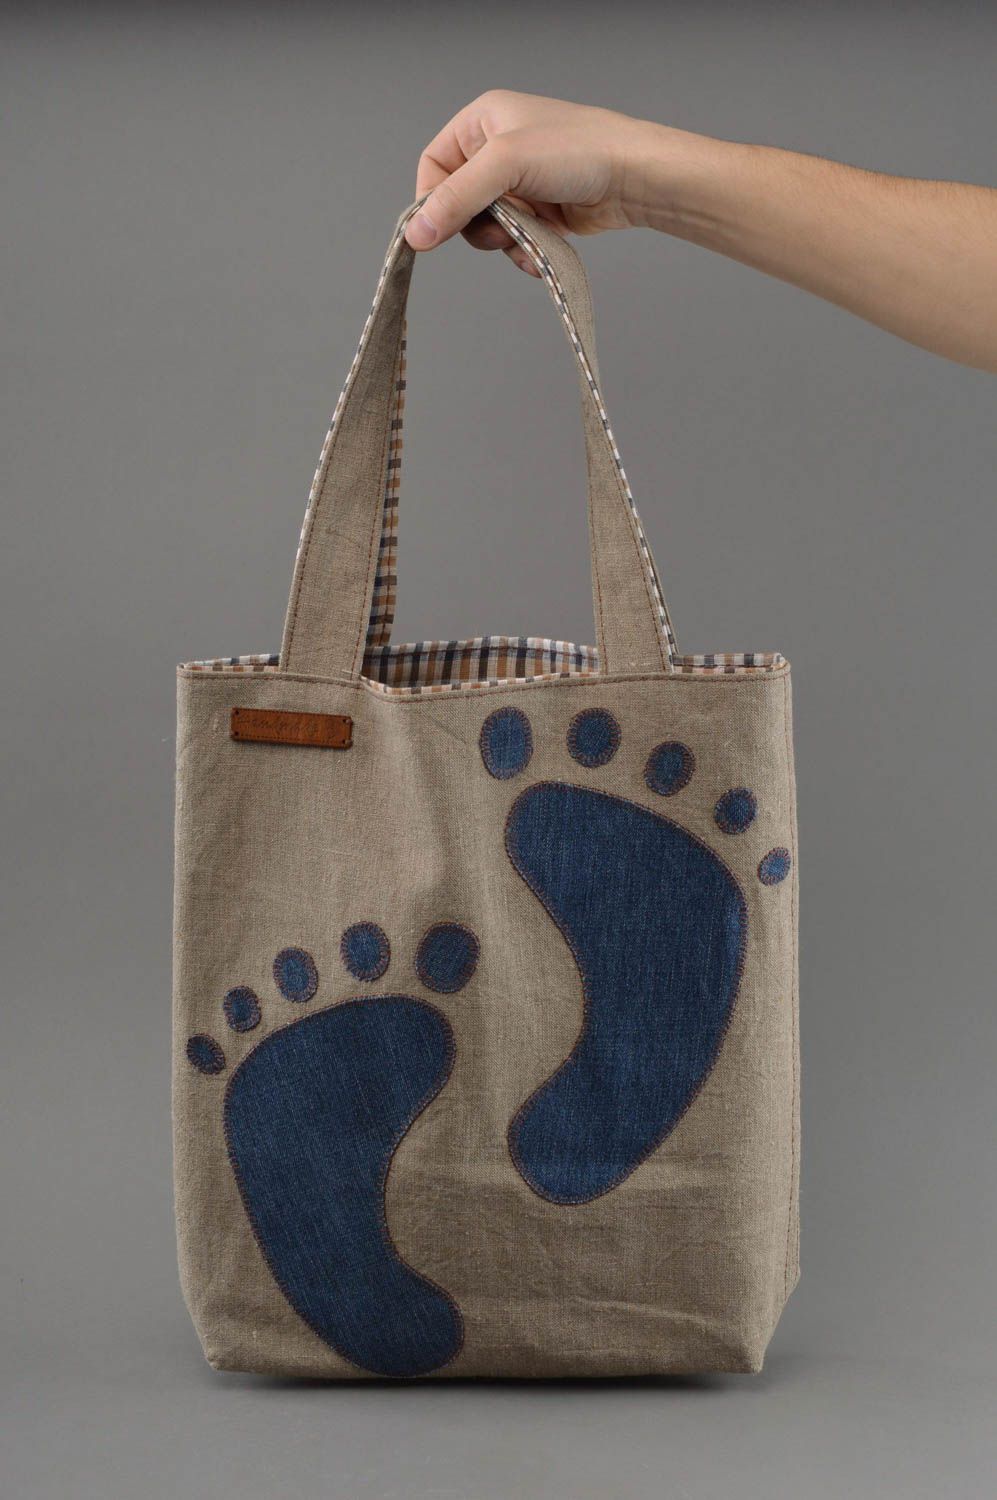 Öko Tasche aus Stoff mit Applikationen Spuren handgemacht grau blau schön foto 4